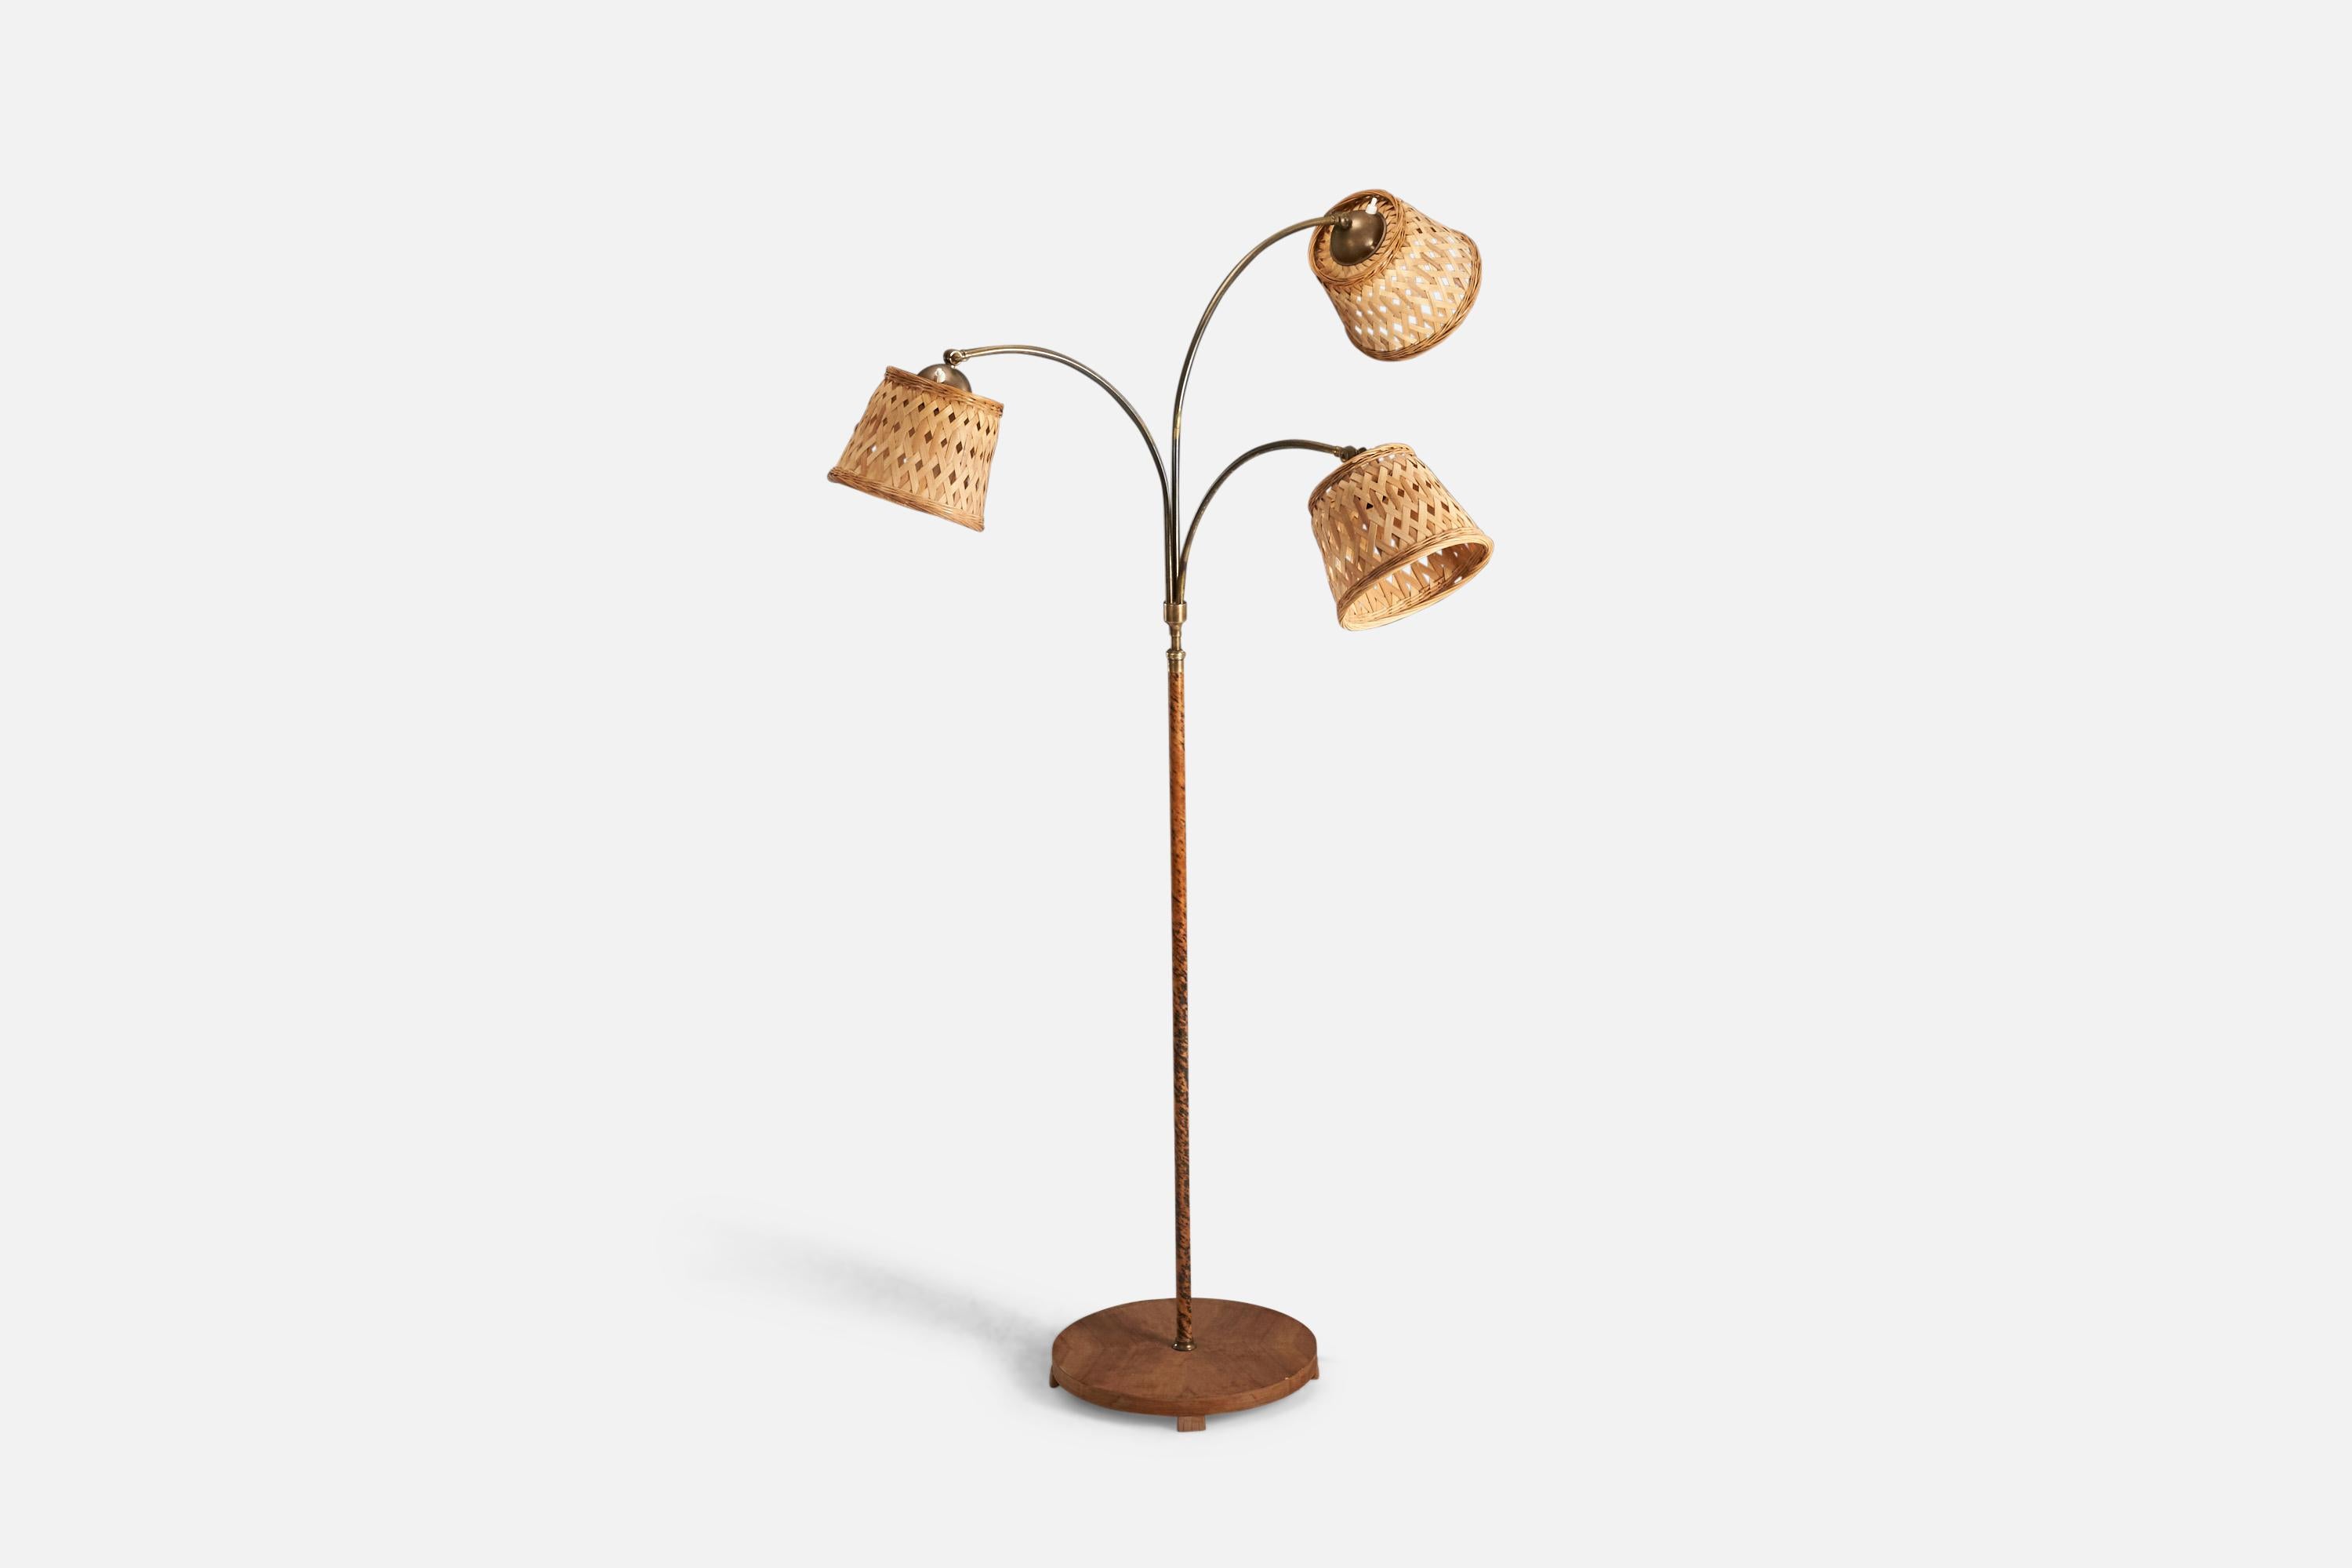 Lampadaire en bois, laiton, placage de bois et rotin conçu et produit par un designer suédois, Suède, années 1930.

Les douilles acceptent les ampoules standard E-26 à culot moyen.

Il n'y a pas de puissance maximale indiquée sur le luminaire.